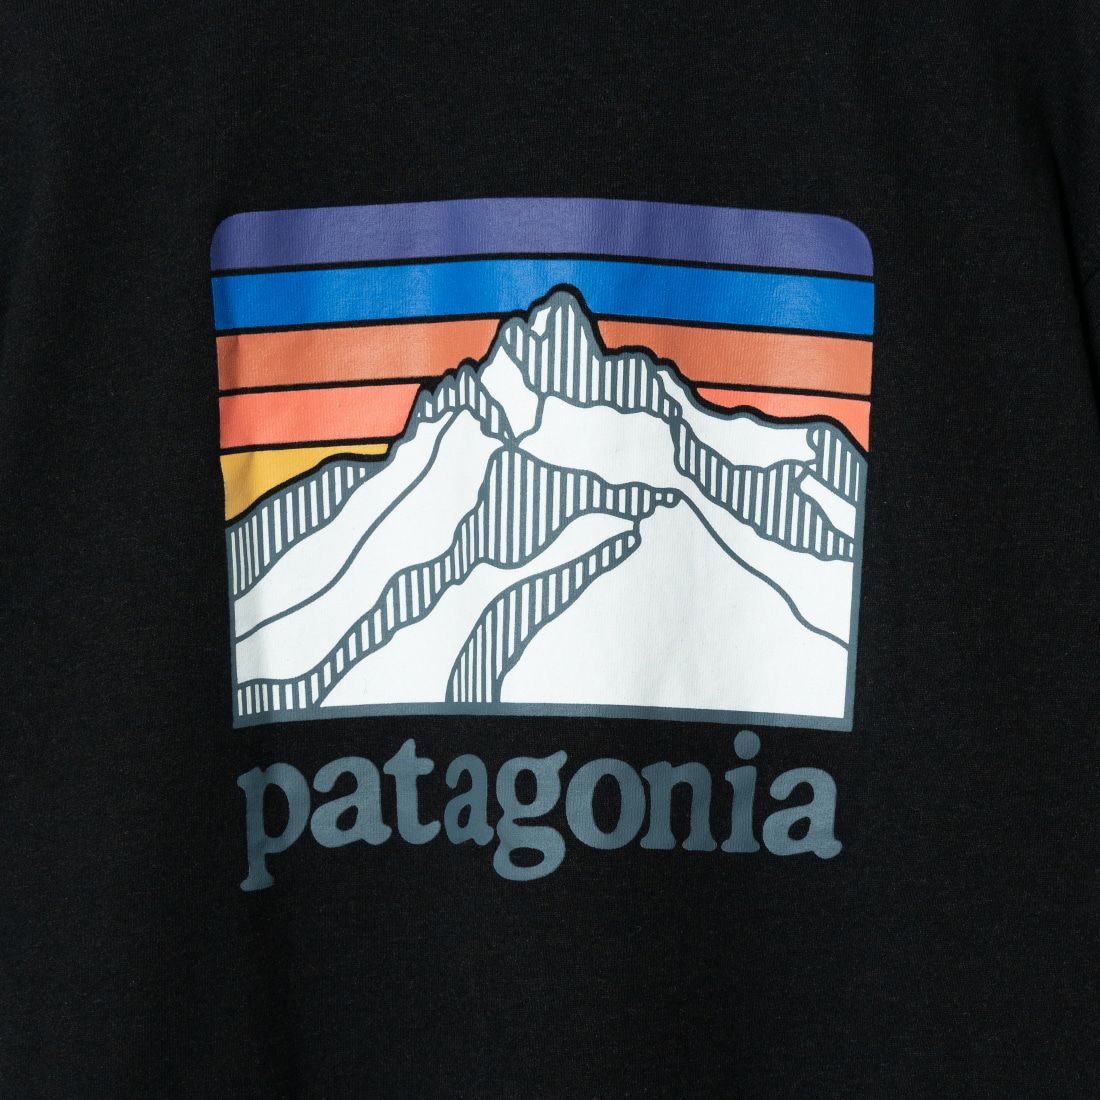 patagonia [パタゴニア] ラインロゴリッジ ポケットレスポンシビリティー [38511] INBK